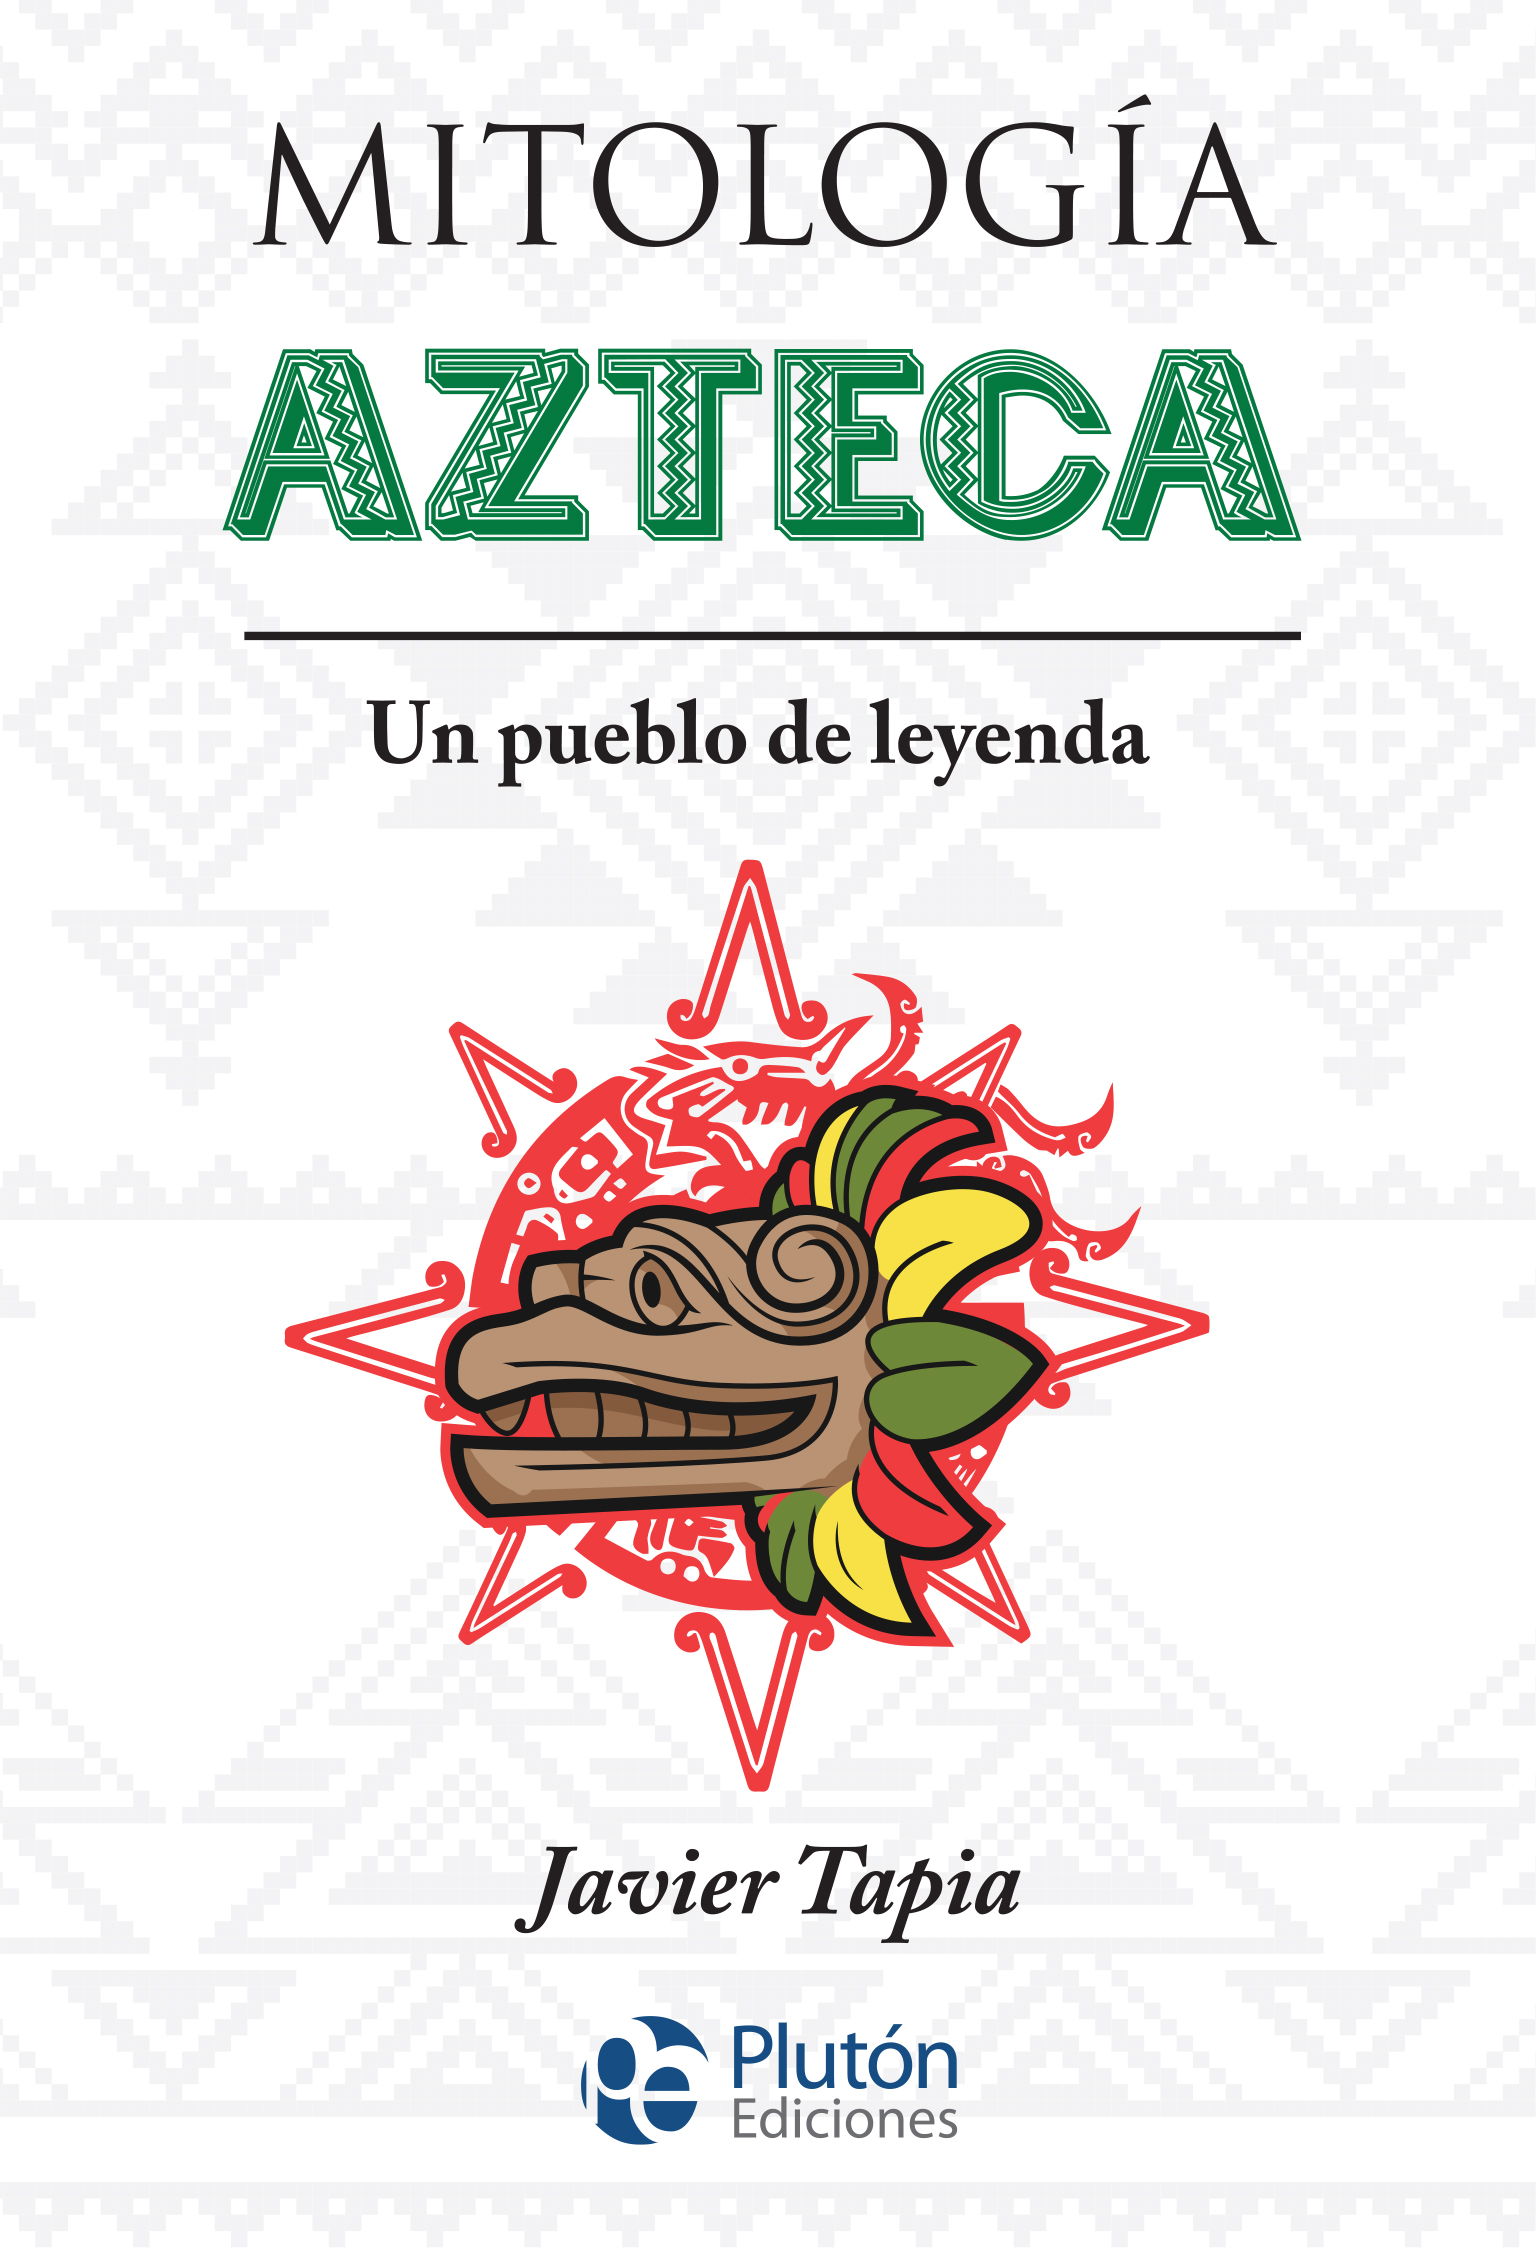 Mitologia_Azteca_-_MYTHOS_2019_-_Maqueta_-_PALSTIFICADO_MATE.jpg